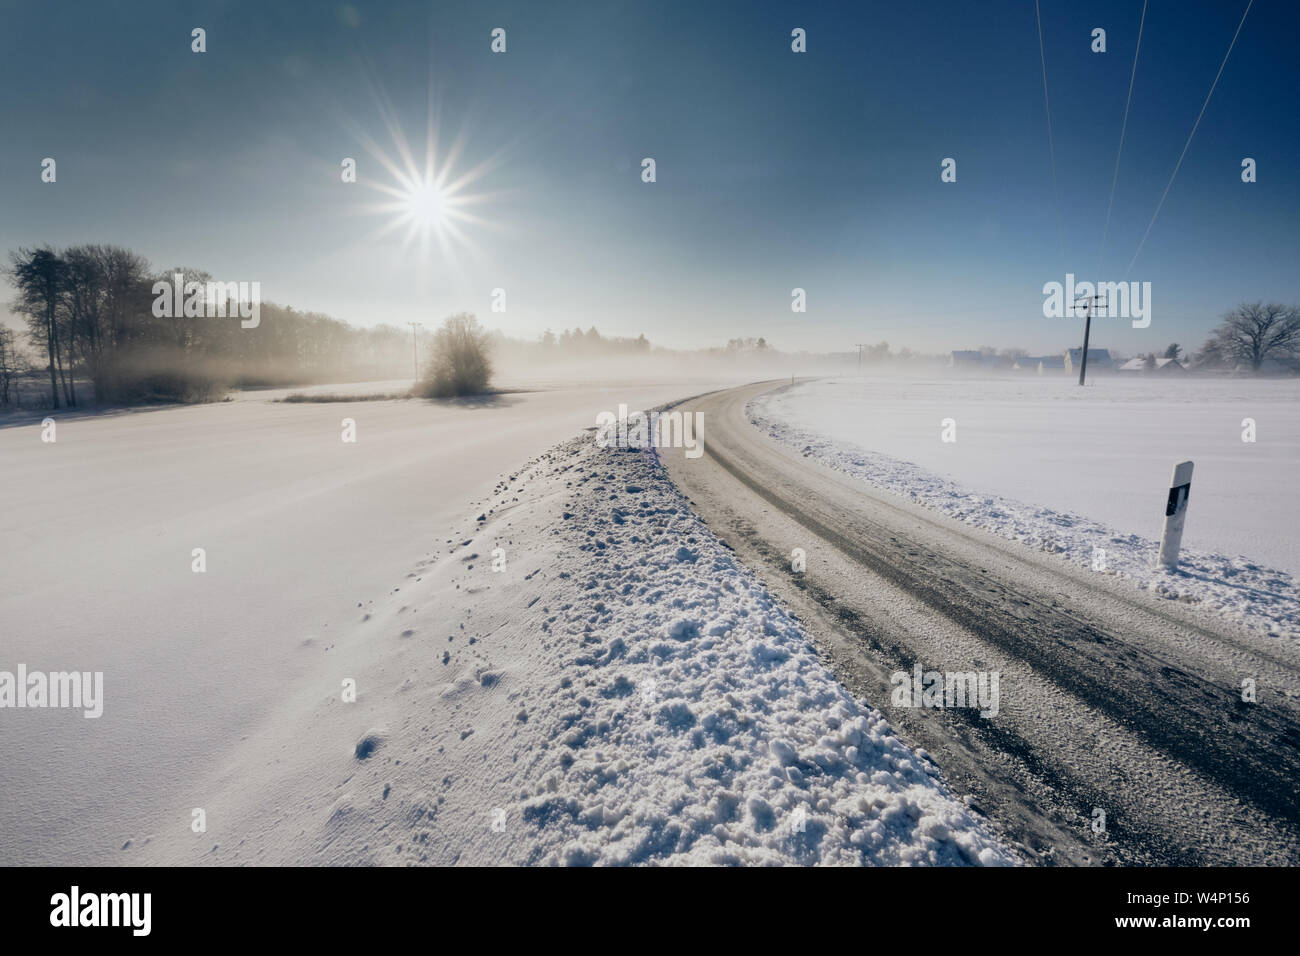 Icy strada di campagna con una prospettiva dimishing su un inverno pieno di sole monrning. Visto nei pressi del villaggio di Unterhaidelbach in Germania Foto Stock